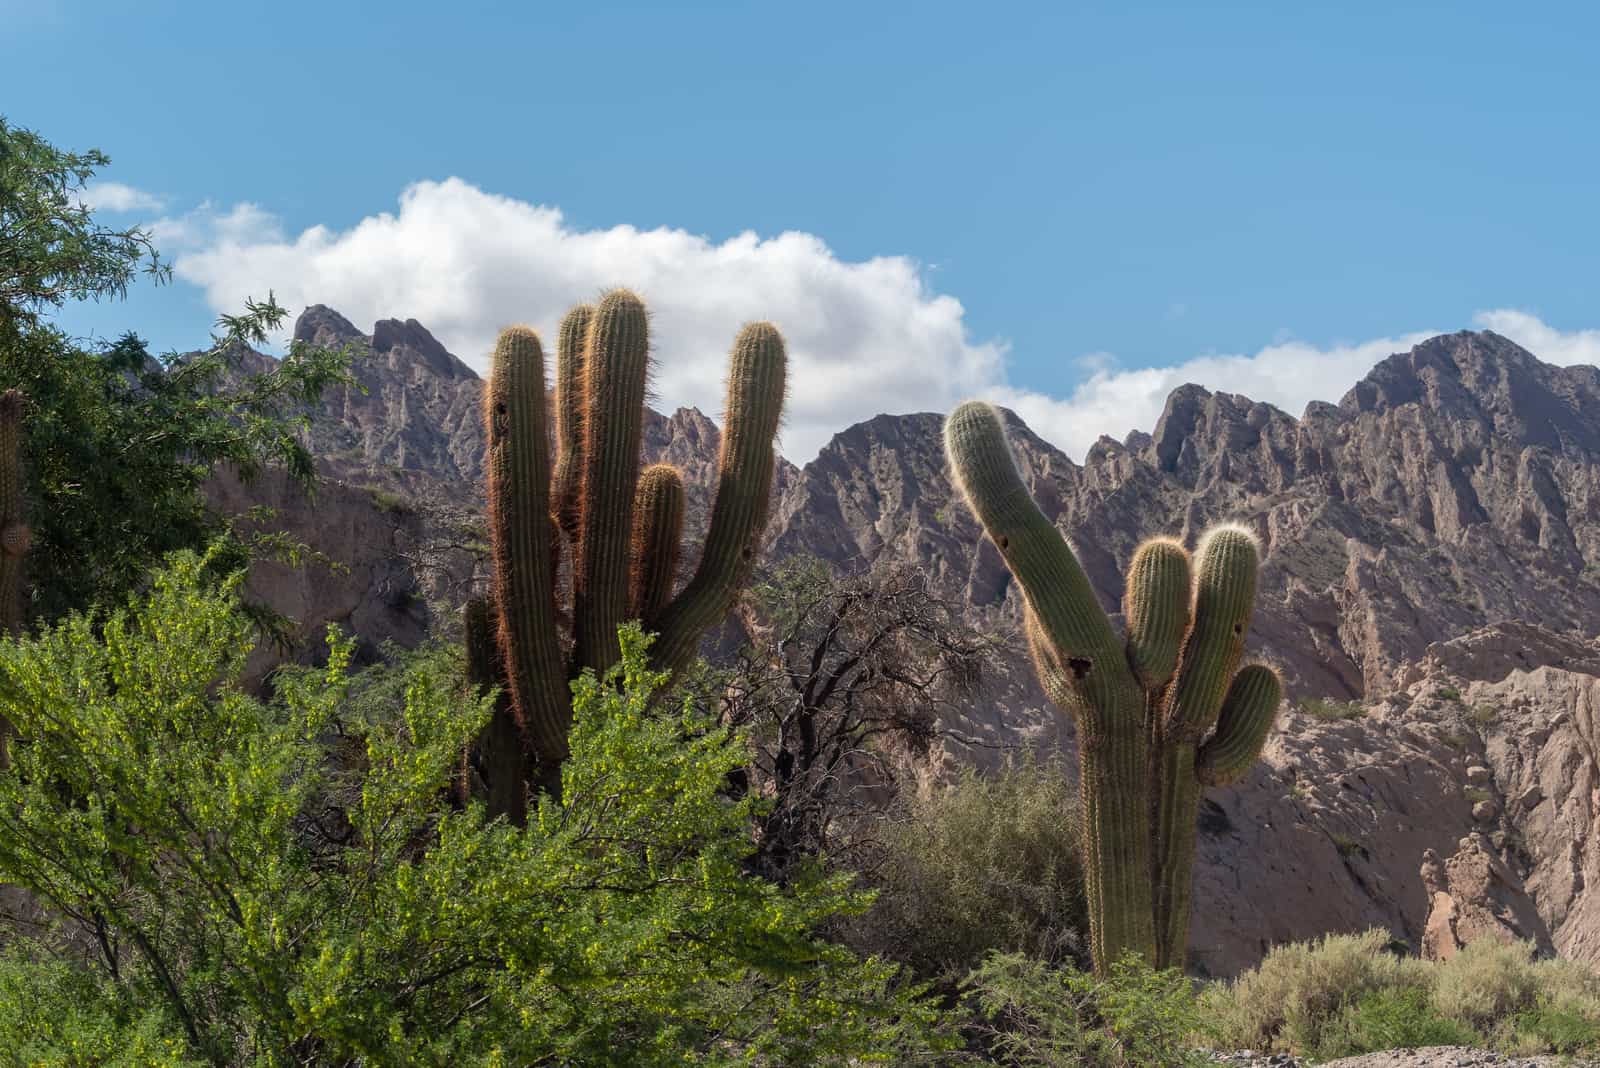 The Argentine saguaro cactus